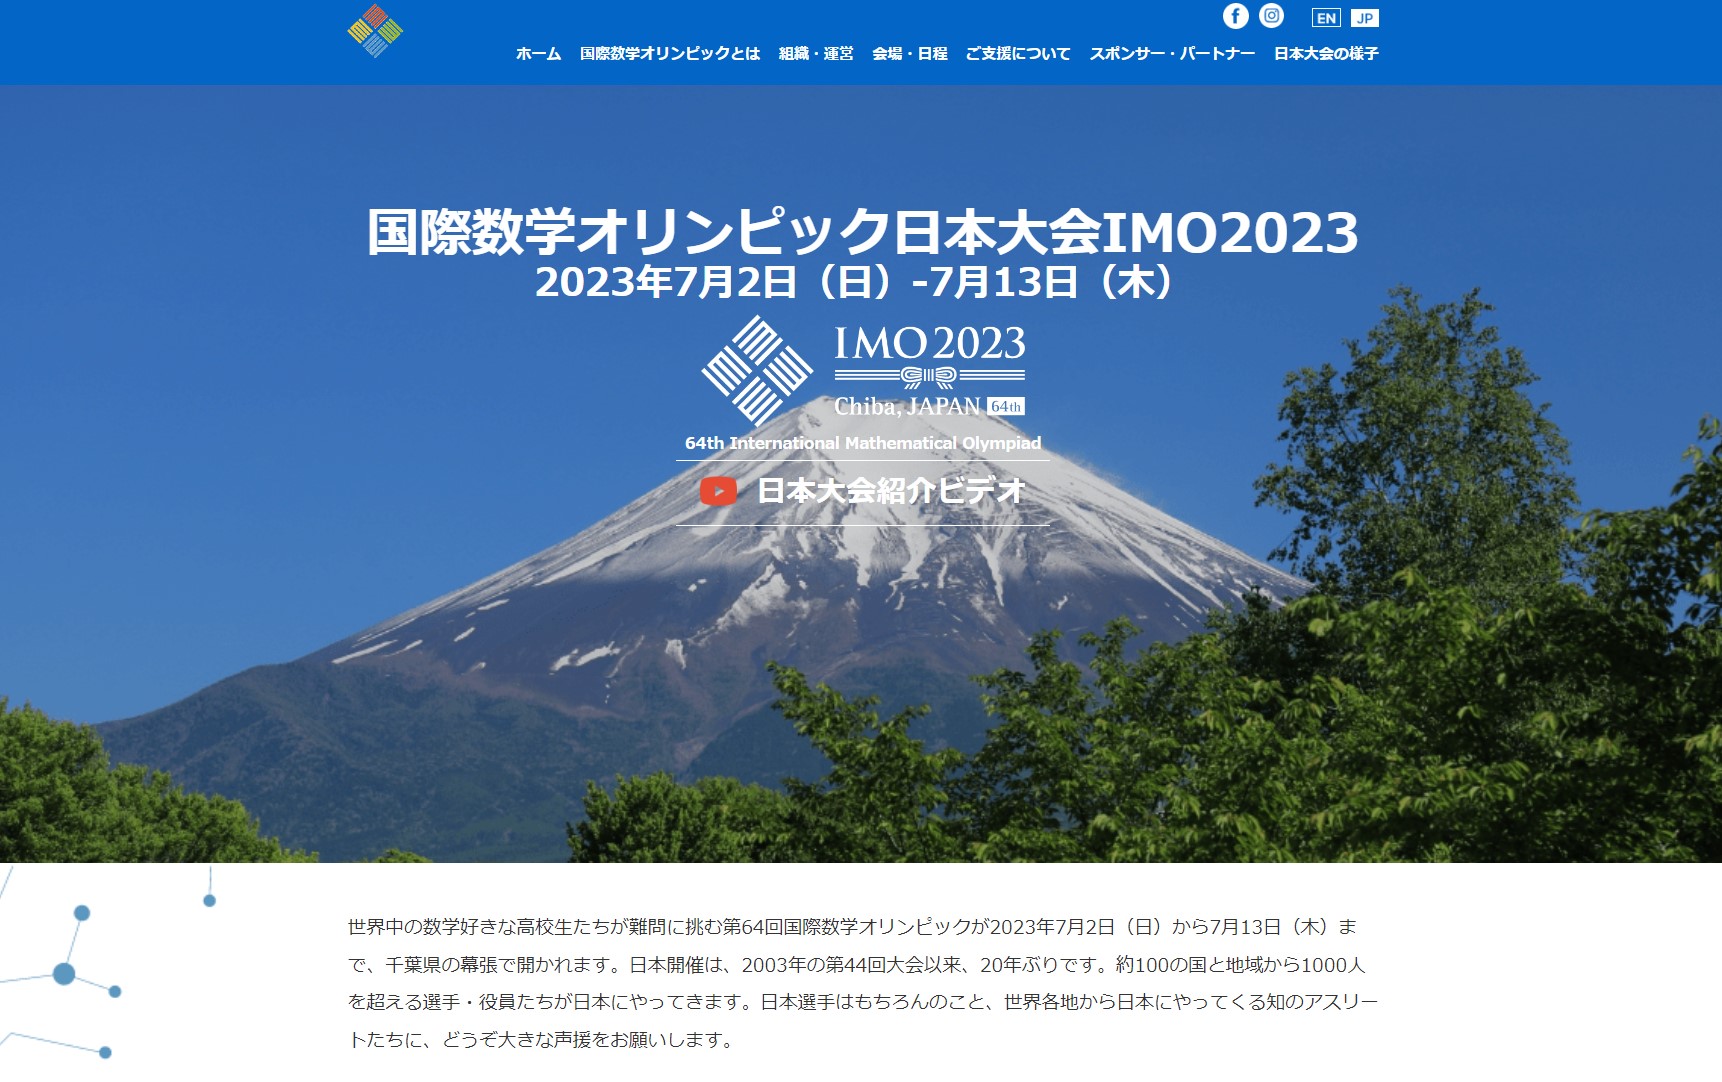 国際数学オリンピック日本開催に「数学とは何か」を思う